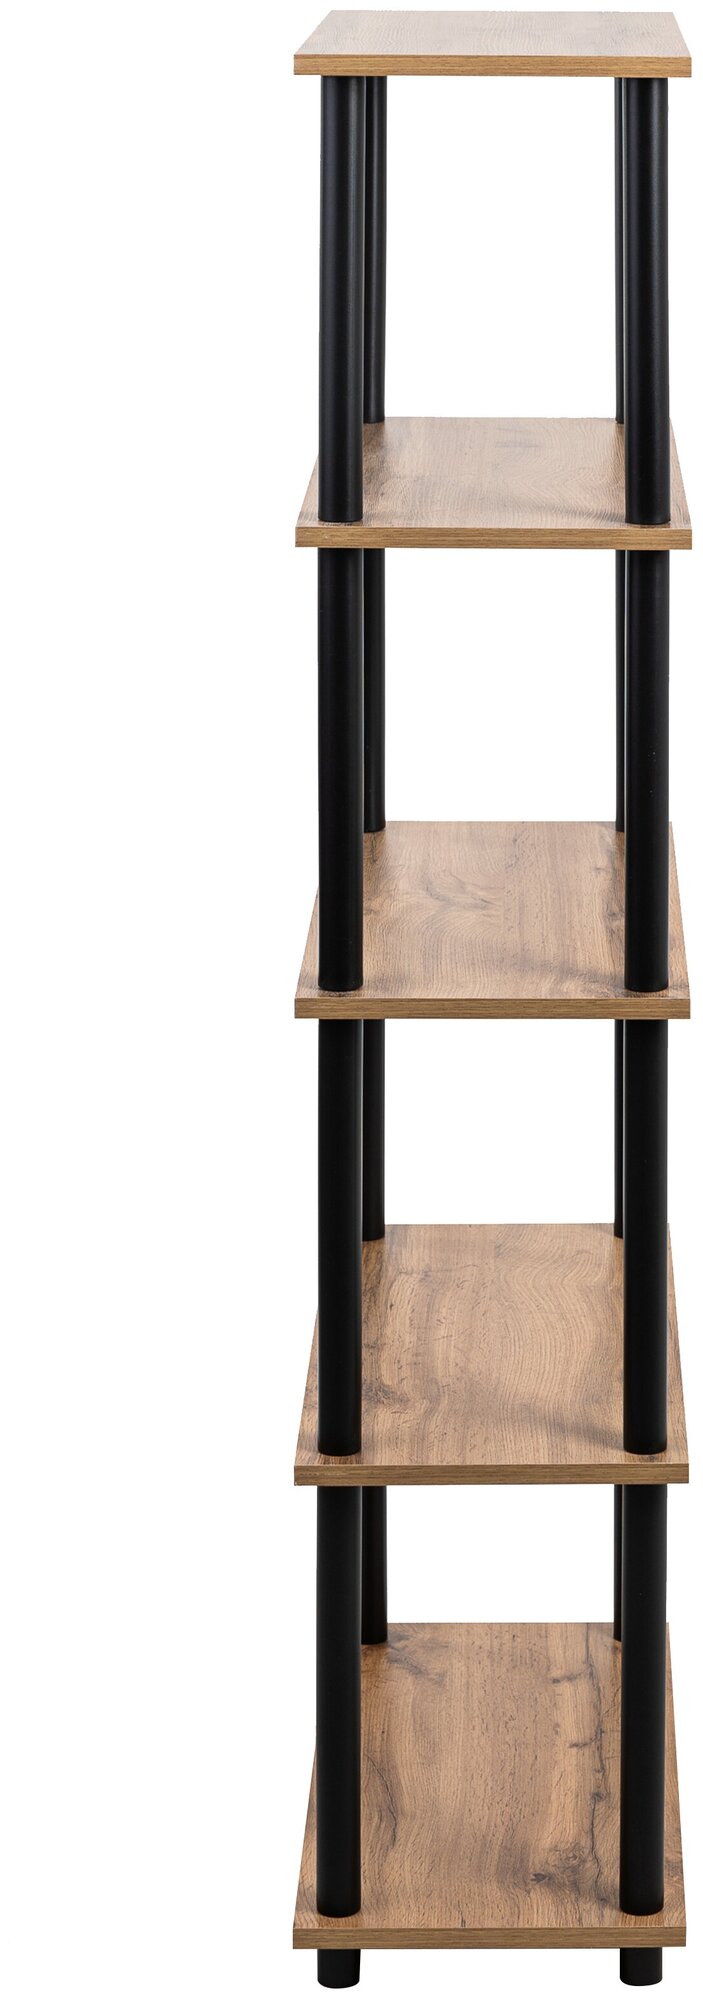 Этажерка деревянная GASTRORAG 1450/5, стеллаж напольный, полка ЛДСП для хранения, мебель для дома, 5 полок, размеры 60 х 30 х 148.5 см, - фотография № 9